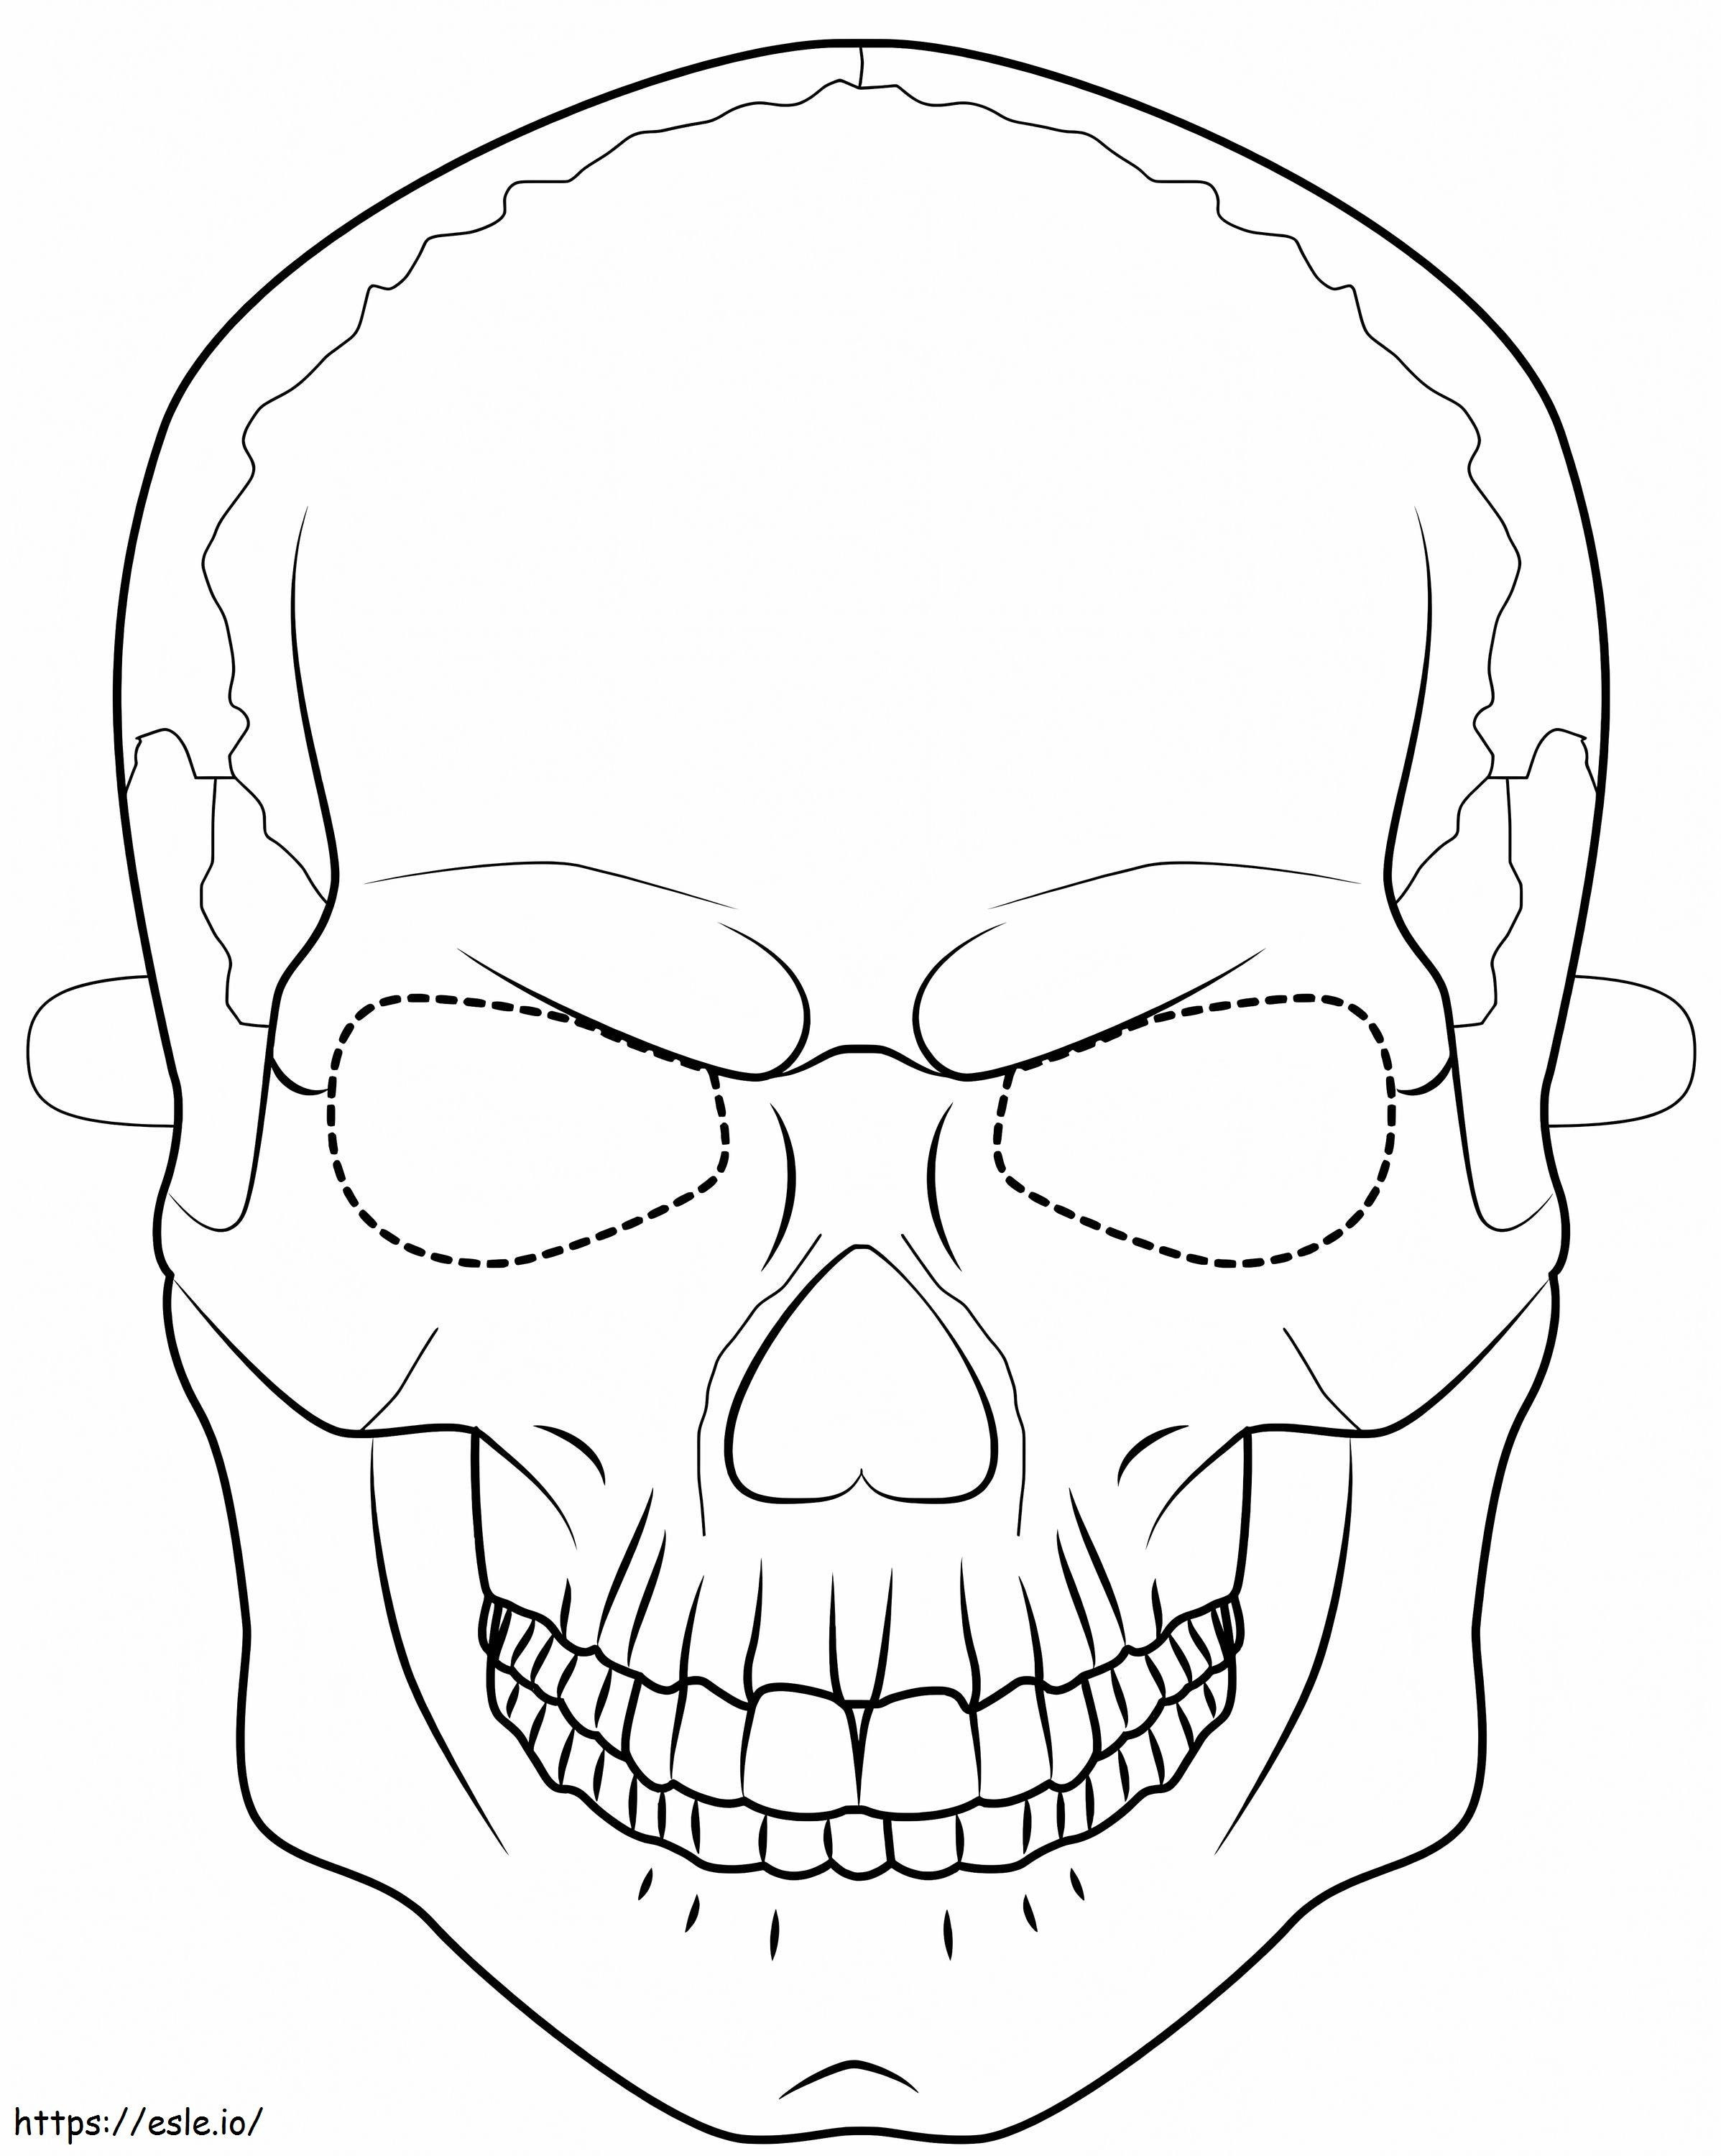 Halloweenowa maska czaszki kolorowanka